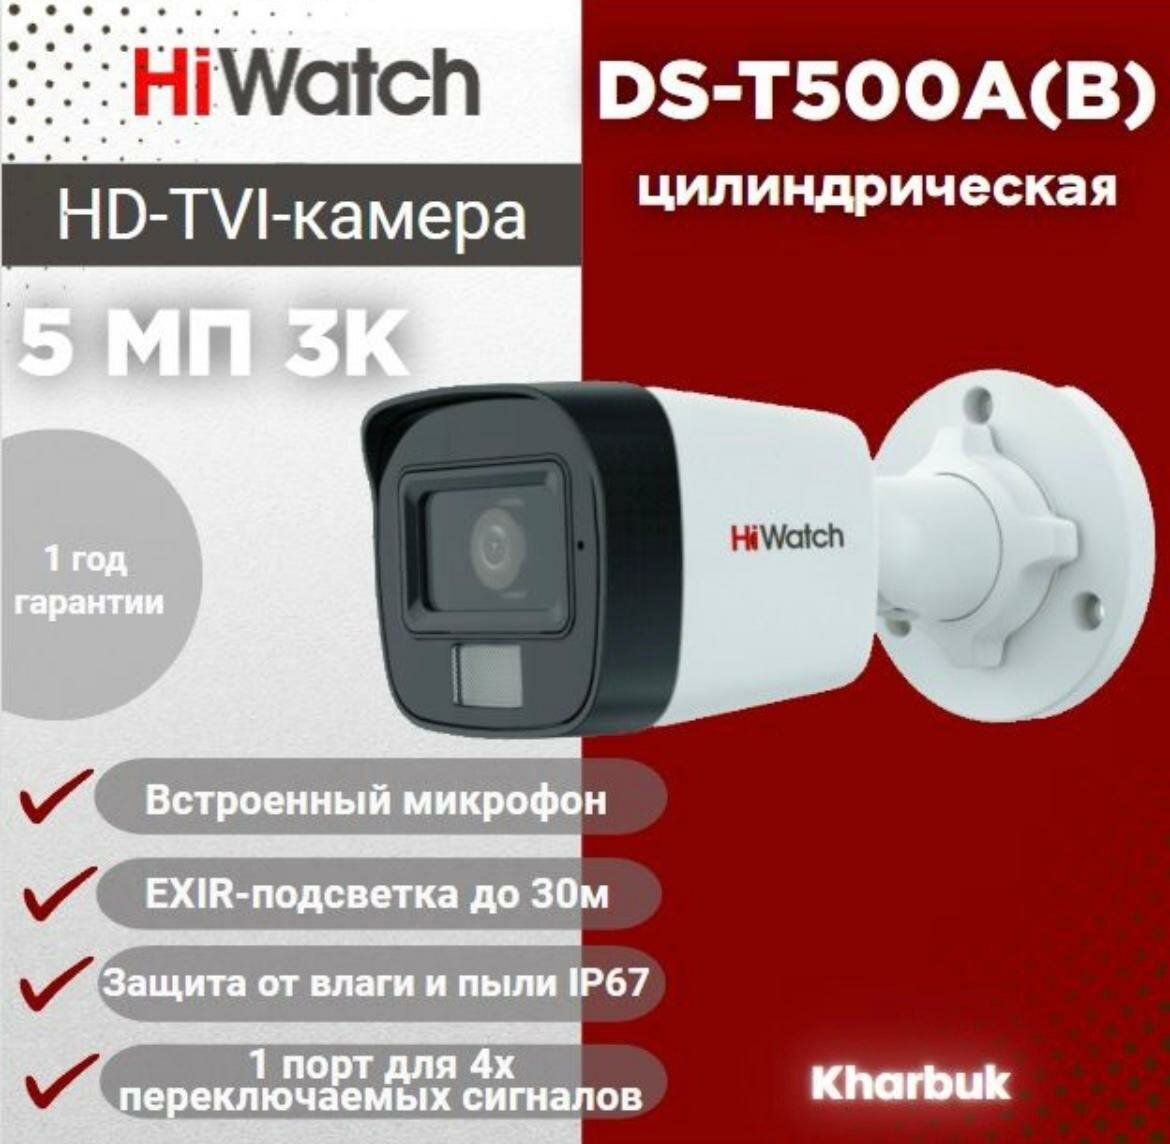 Hiwatch DS-T500A(B) 3К (5 Мп 16:9) уличная цилиндрическая HD-TVI камера с гибридной подсветкой EXIR/LED до 30/20 м и встроенным микрофоном (AoC).